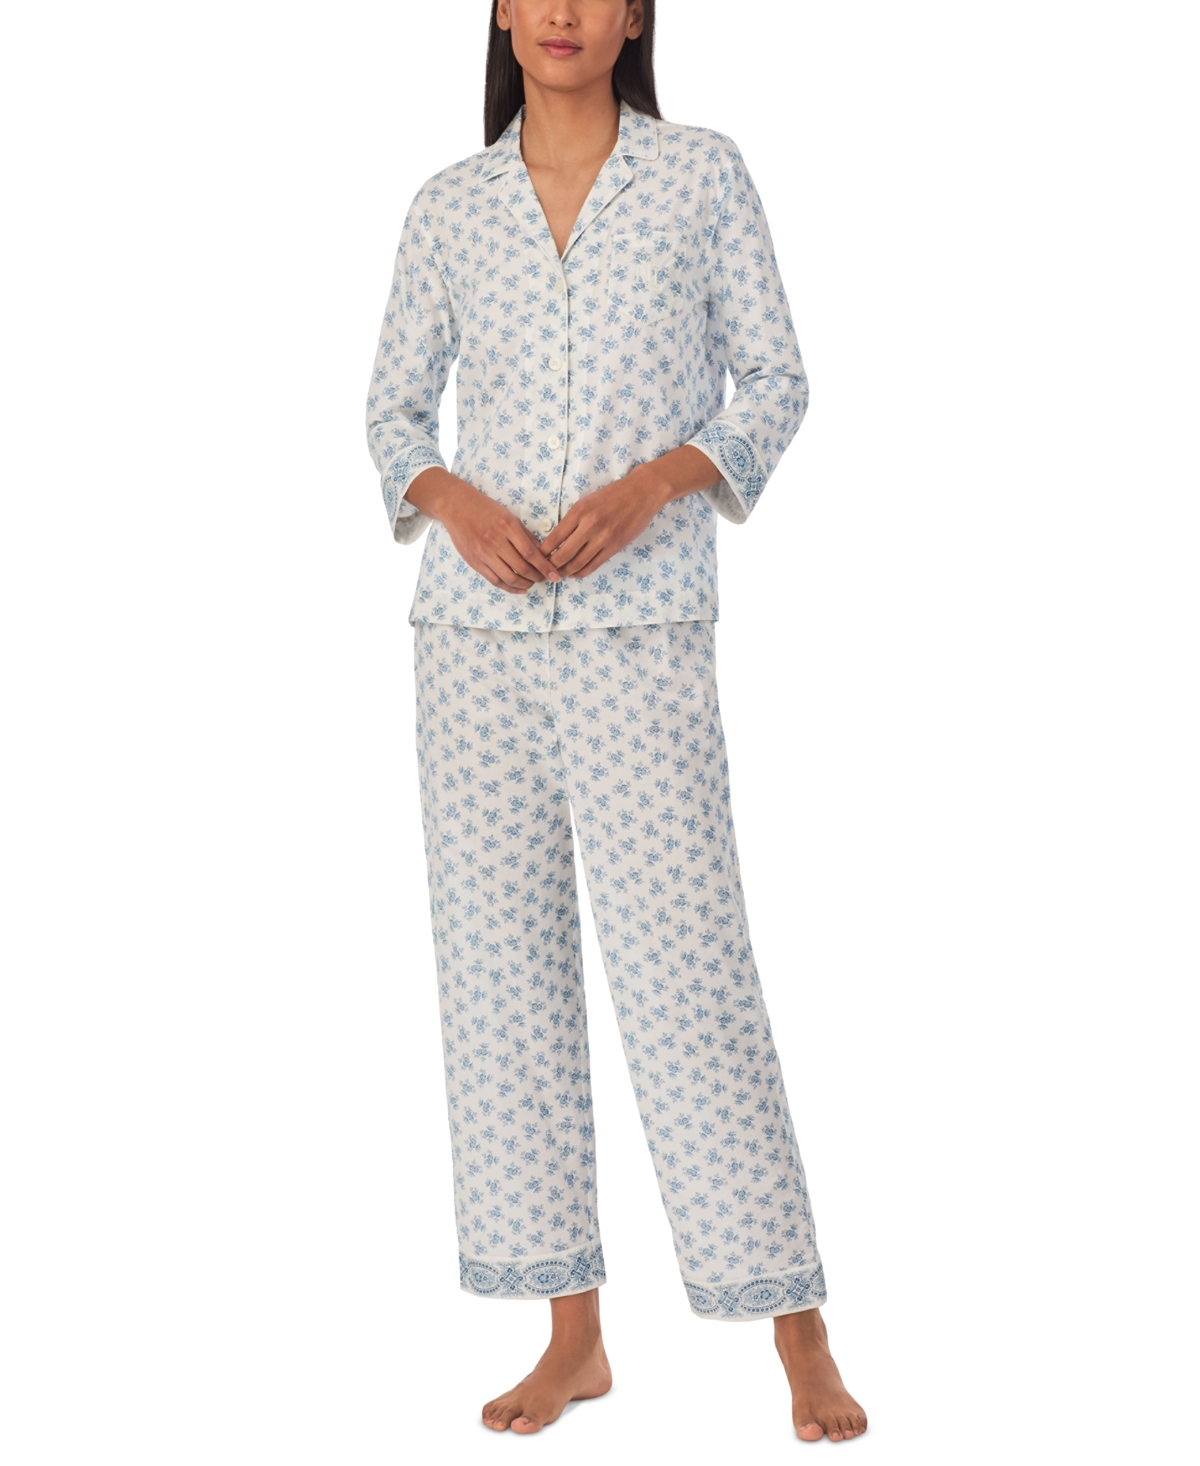 Women's 2-Pc. Floral Ankle Pajamas Set - Blue Floral